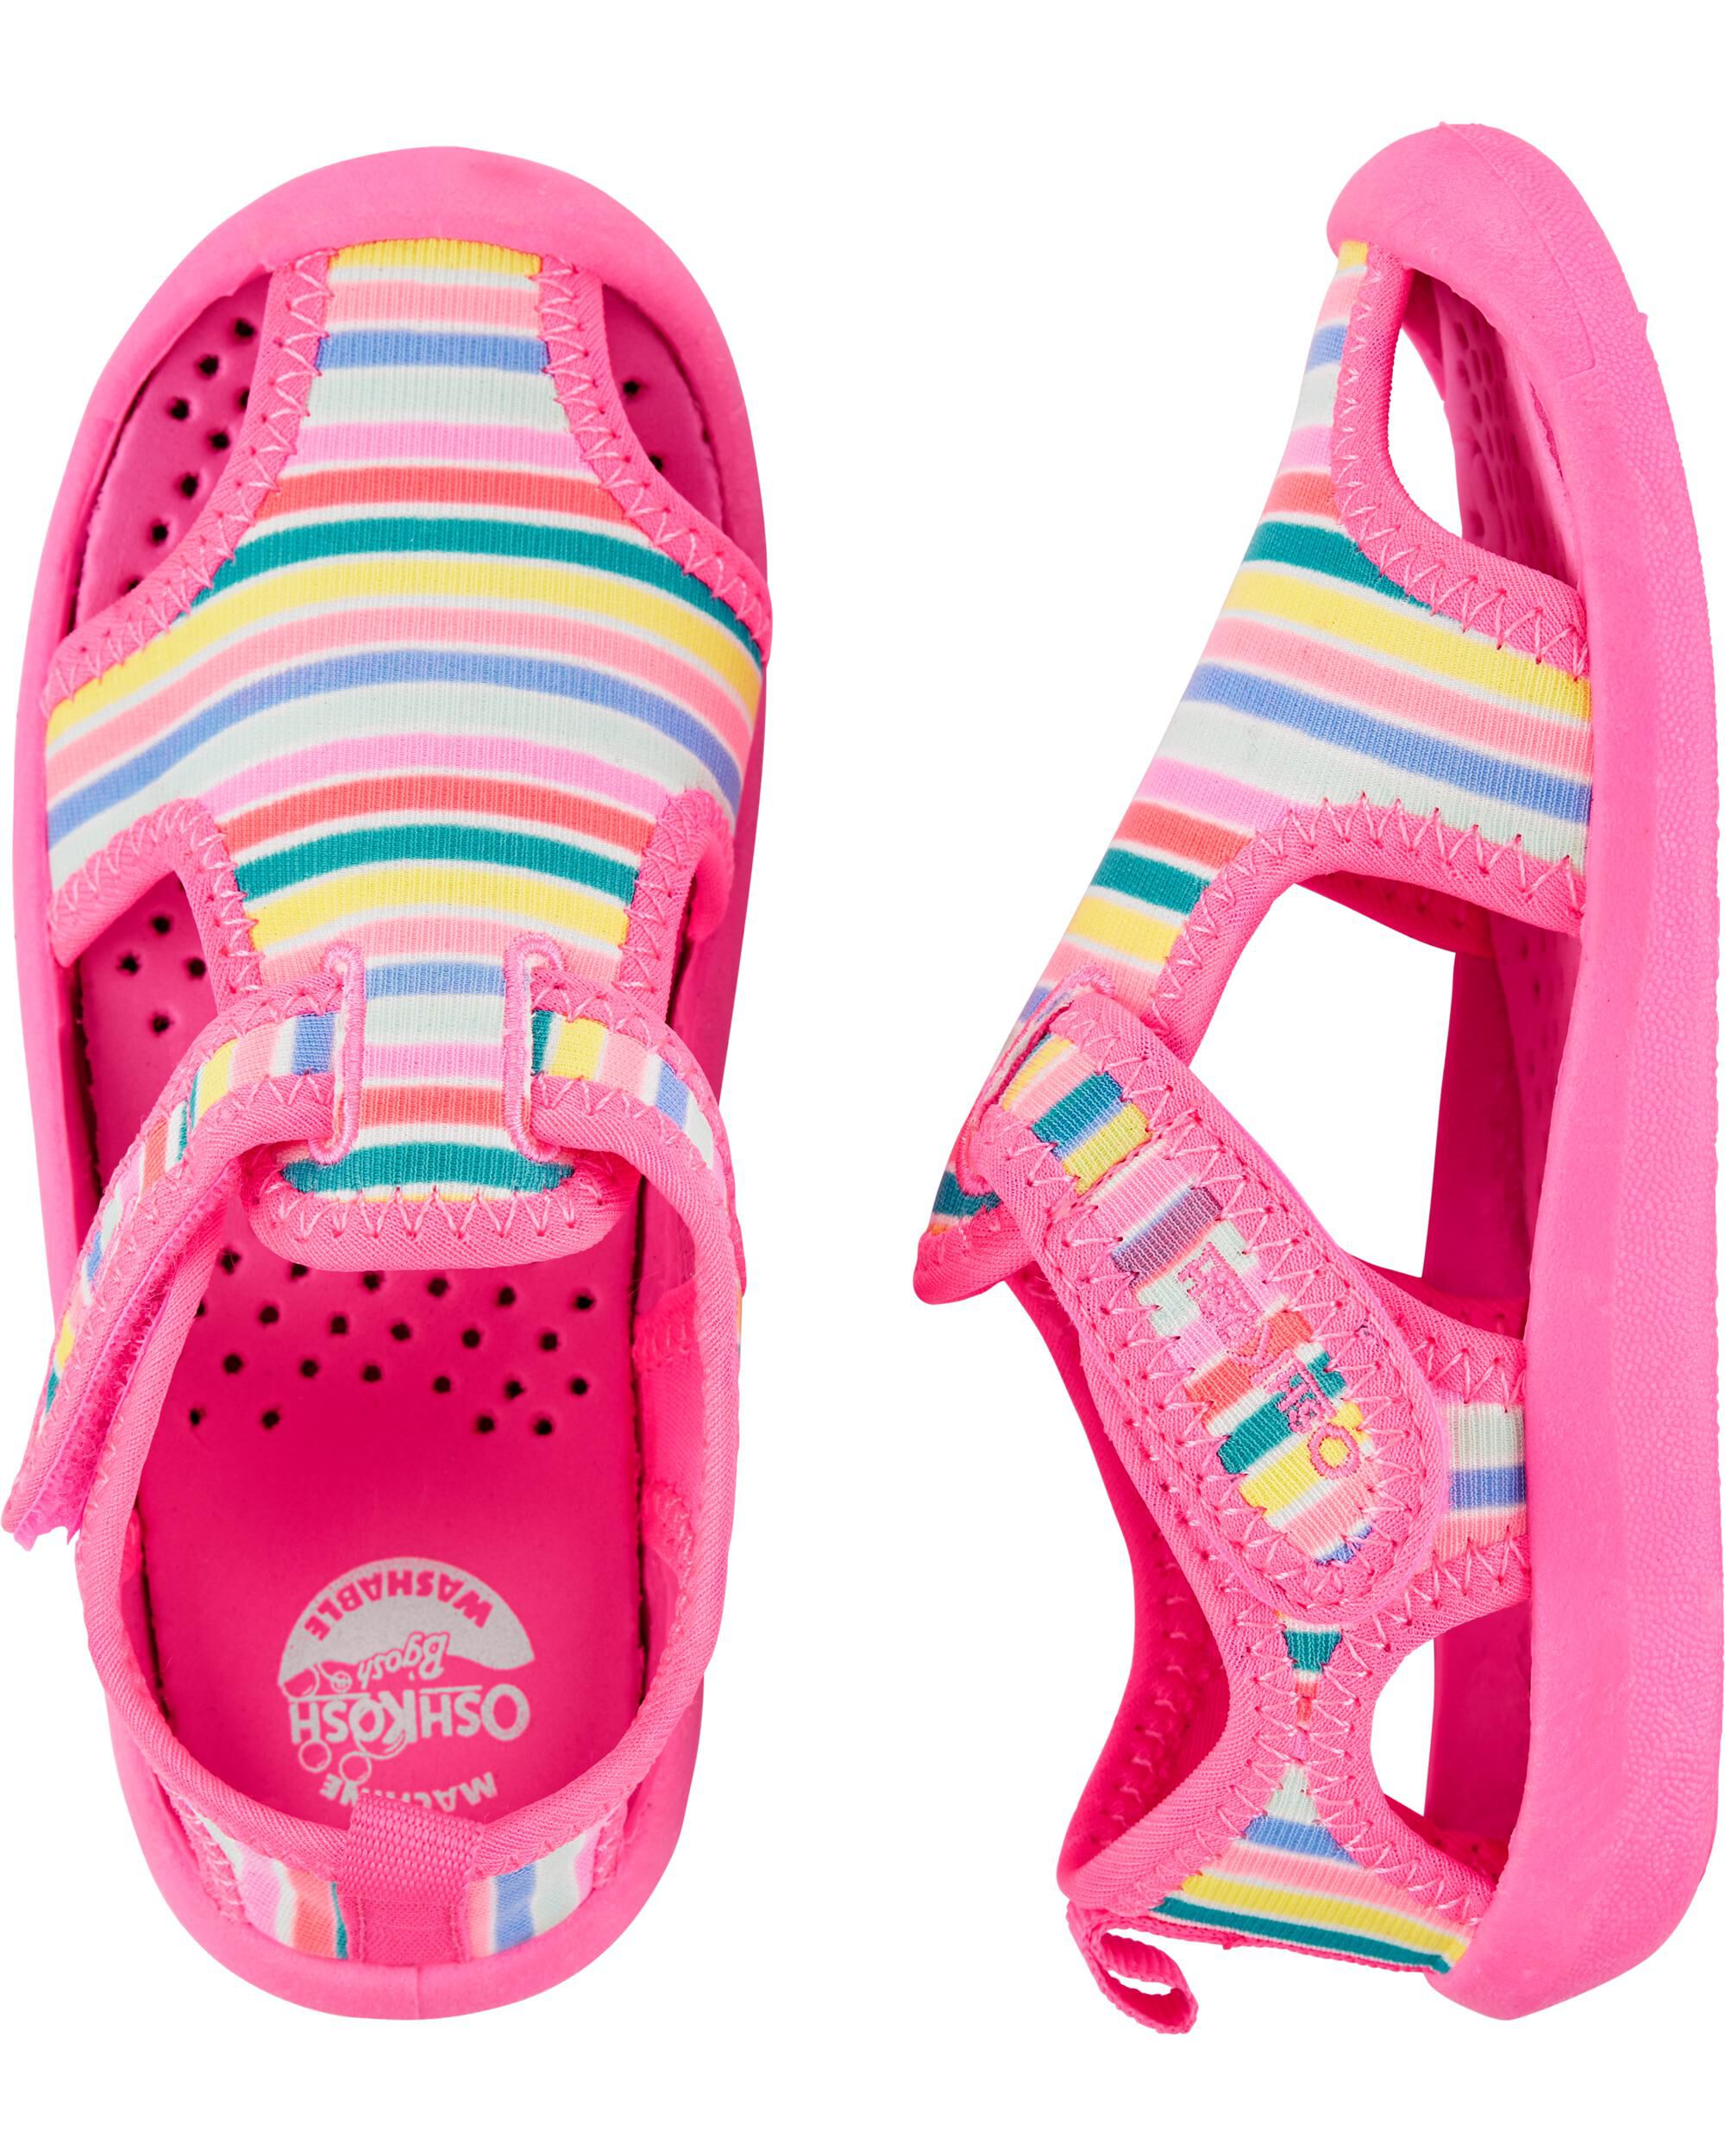 Toddler Girl Shoes | OshKosh | Free 